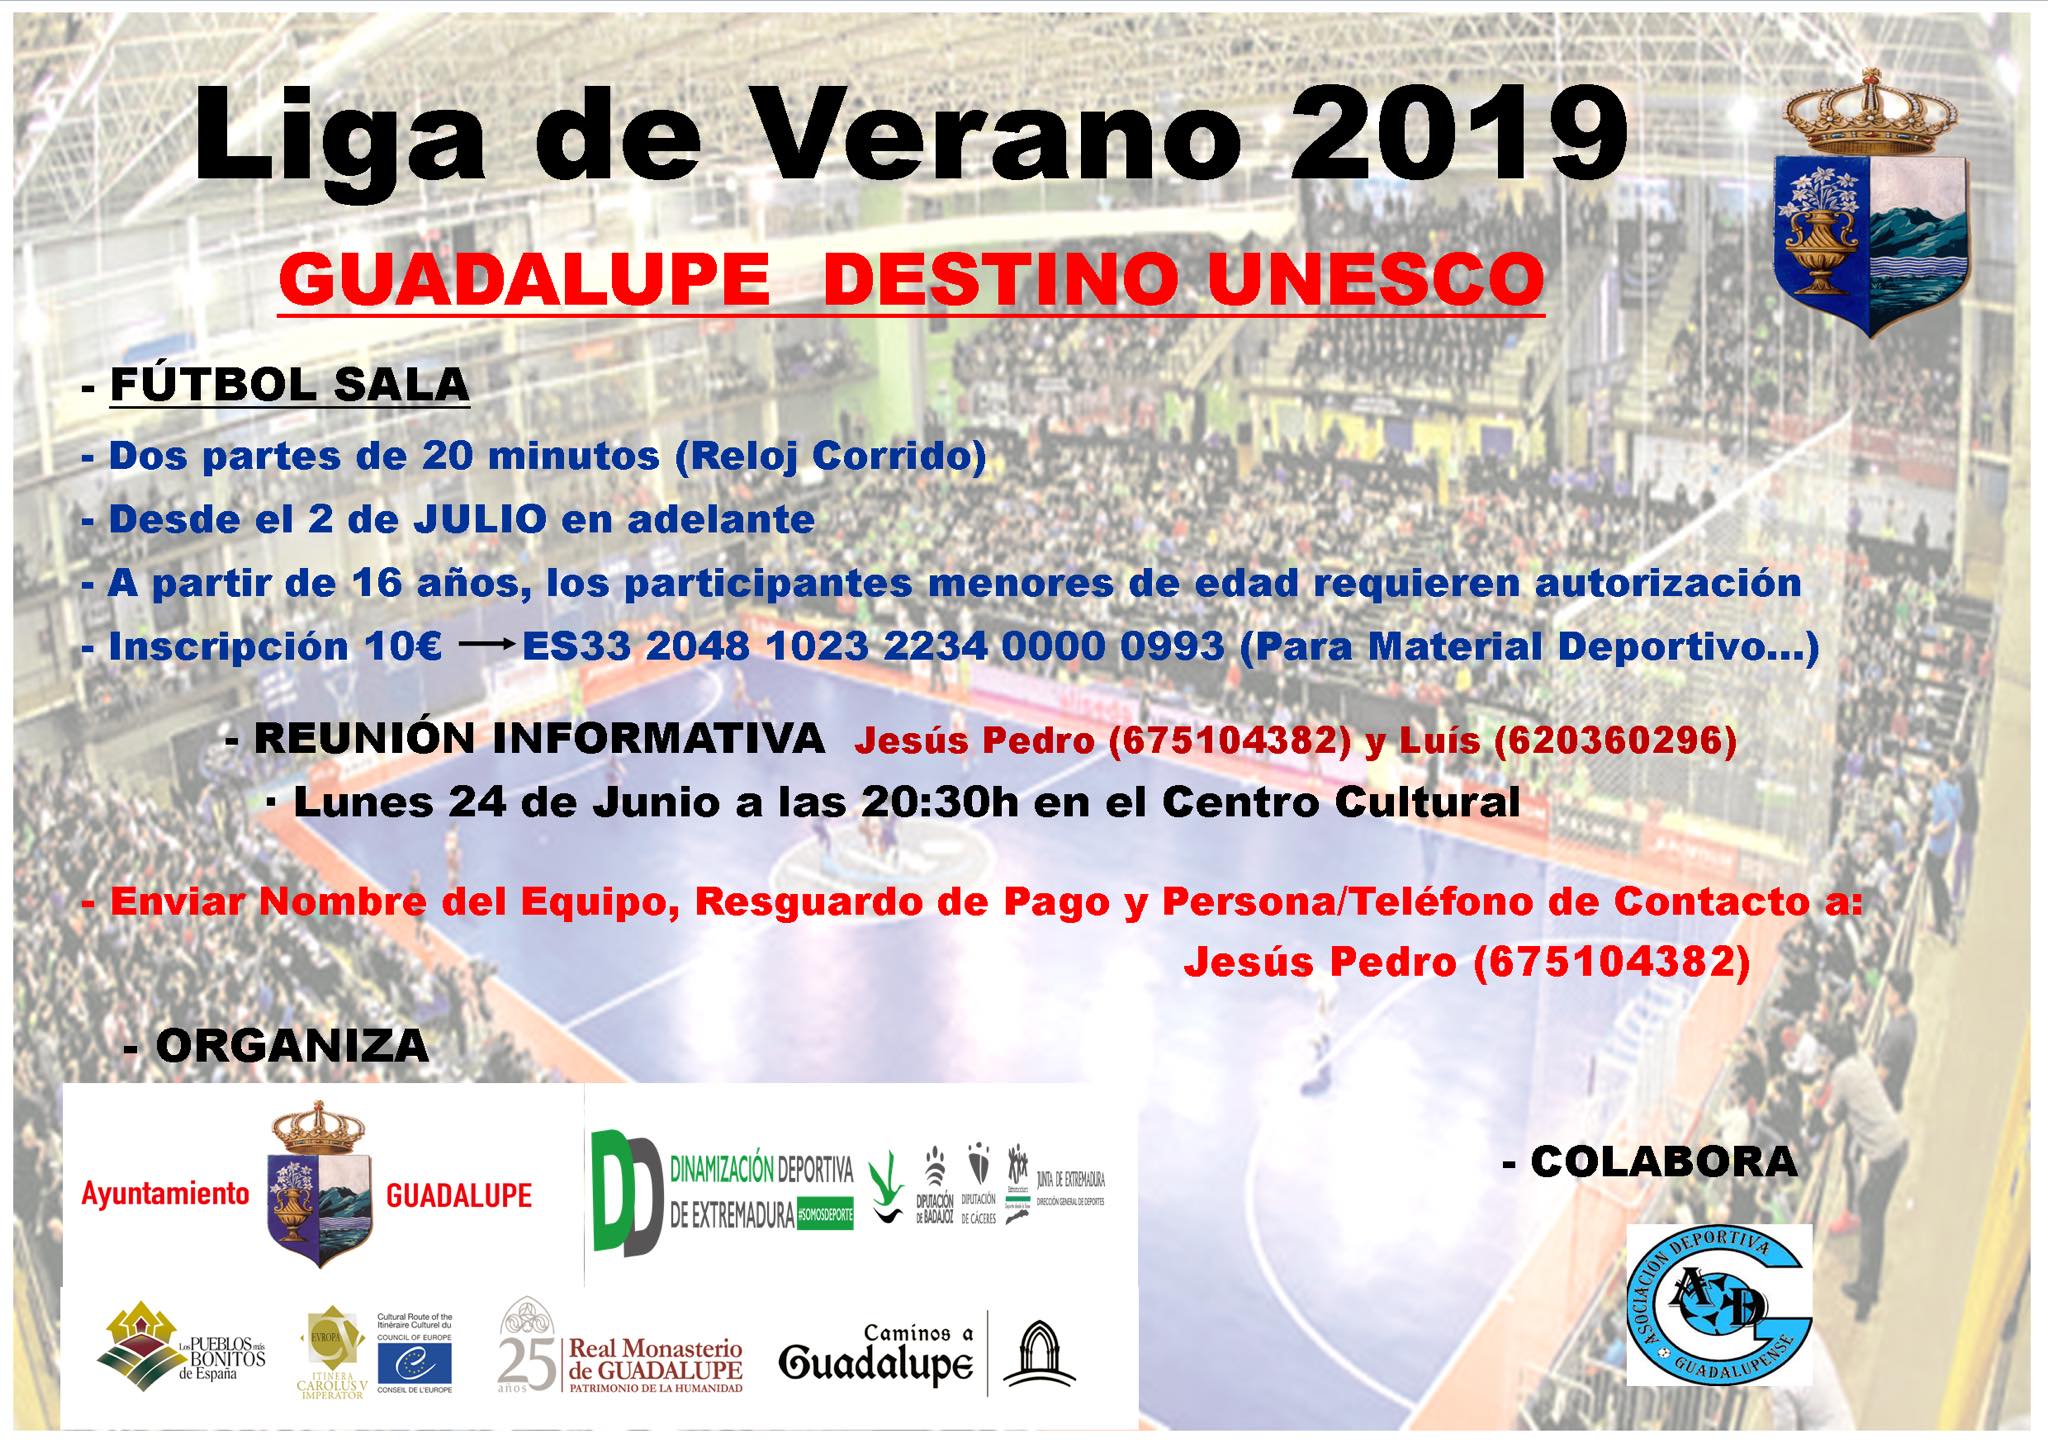 Liga de fútbol sala de verano 2019 - Guadalupe (Cáceres)